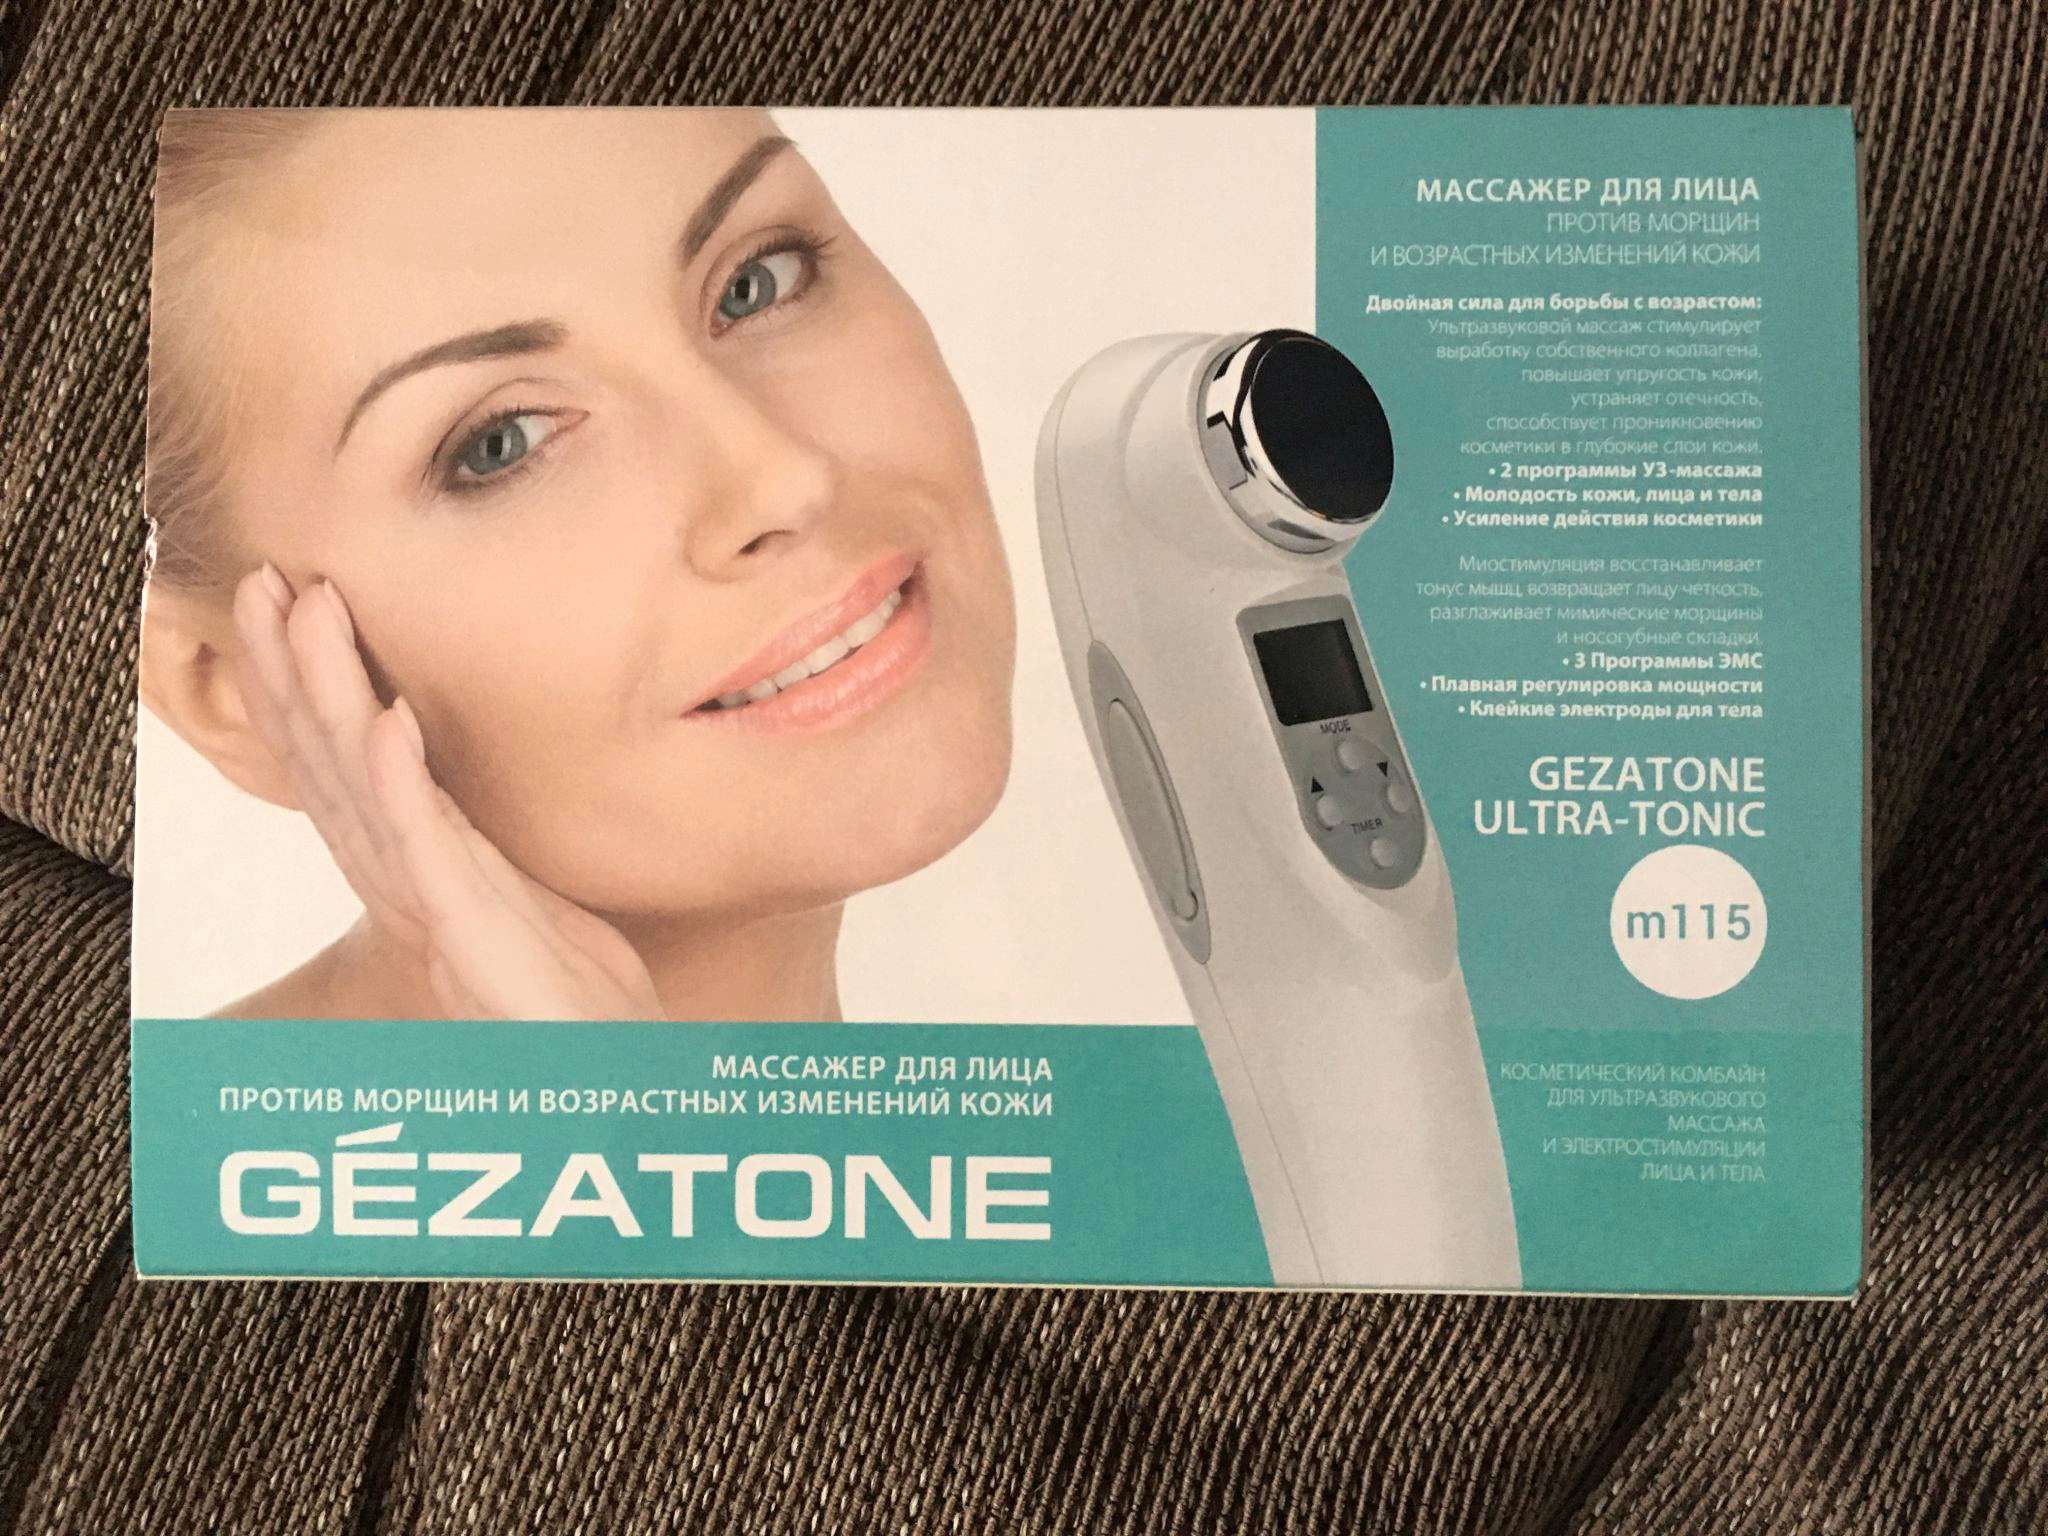 Какие аппараты для лица лучше. Gezatone Ultra-Tonic m115. Аппарат миостимуляция лица Gezatone m701. Жезатон массажер для лица и тела. Массажер для лица шеи и тела ультразвук миостимуляция m115 Gezatone.